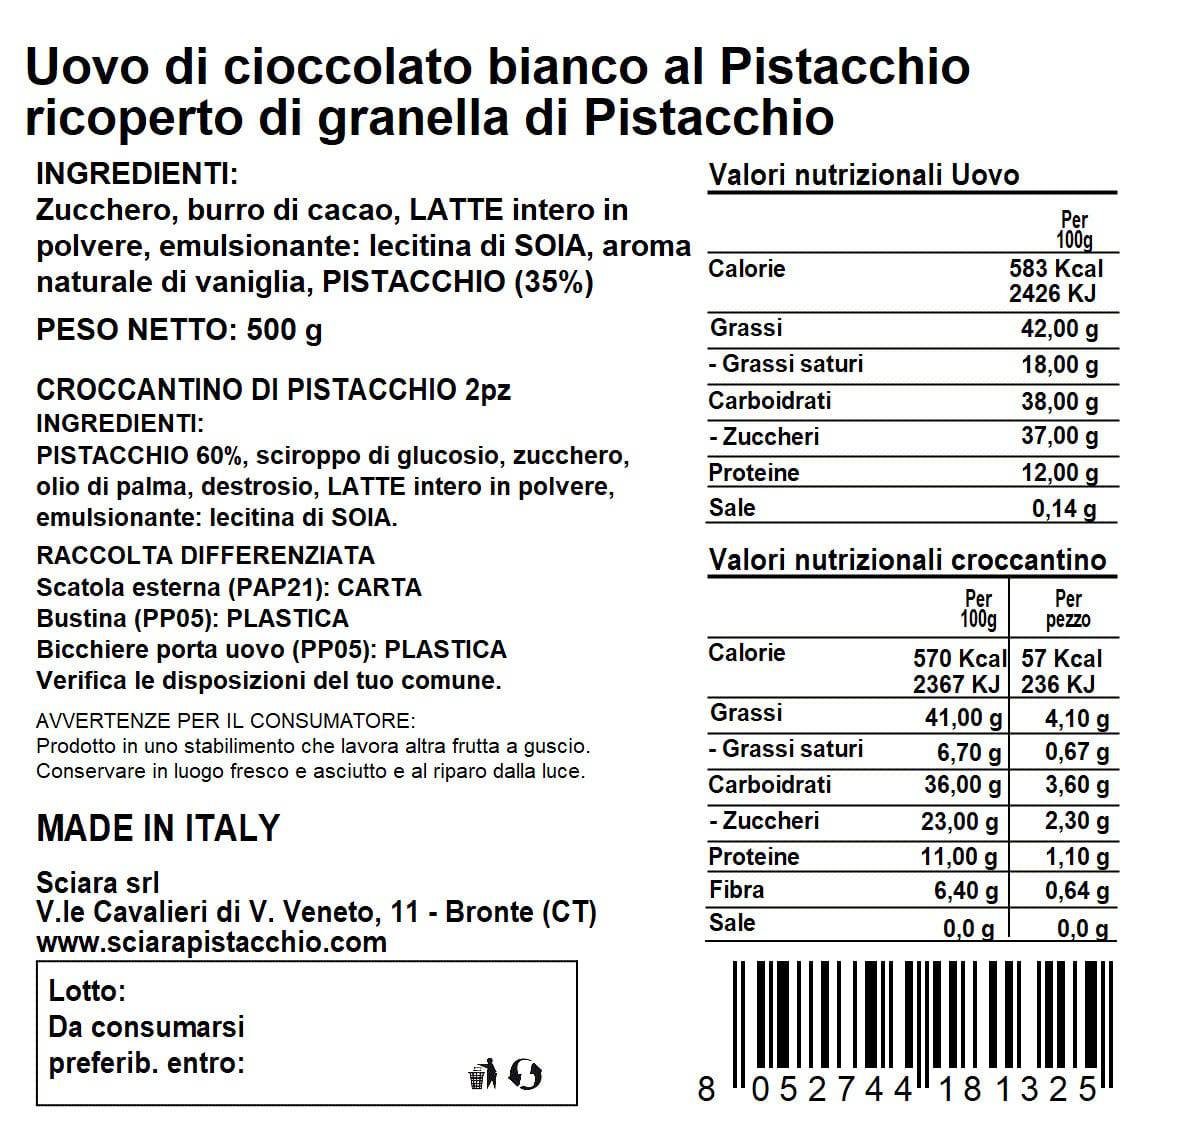 Colomba Pistacchio e "Cioccolato di Modica IGP" e Uovo al Pistacchio con Granella - Sciara La terra del pistacchio Bronte